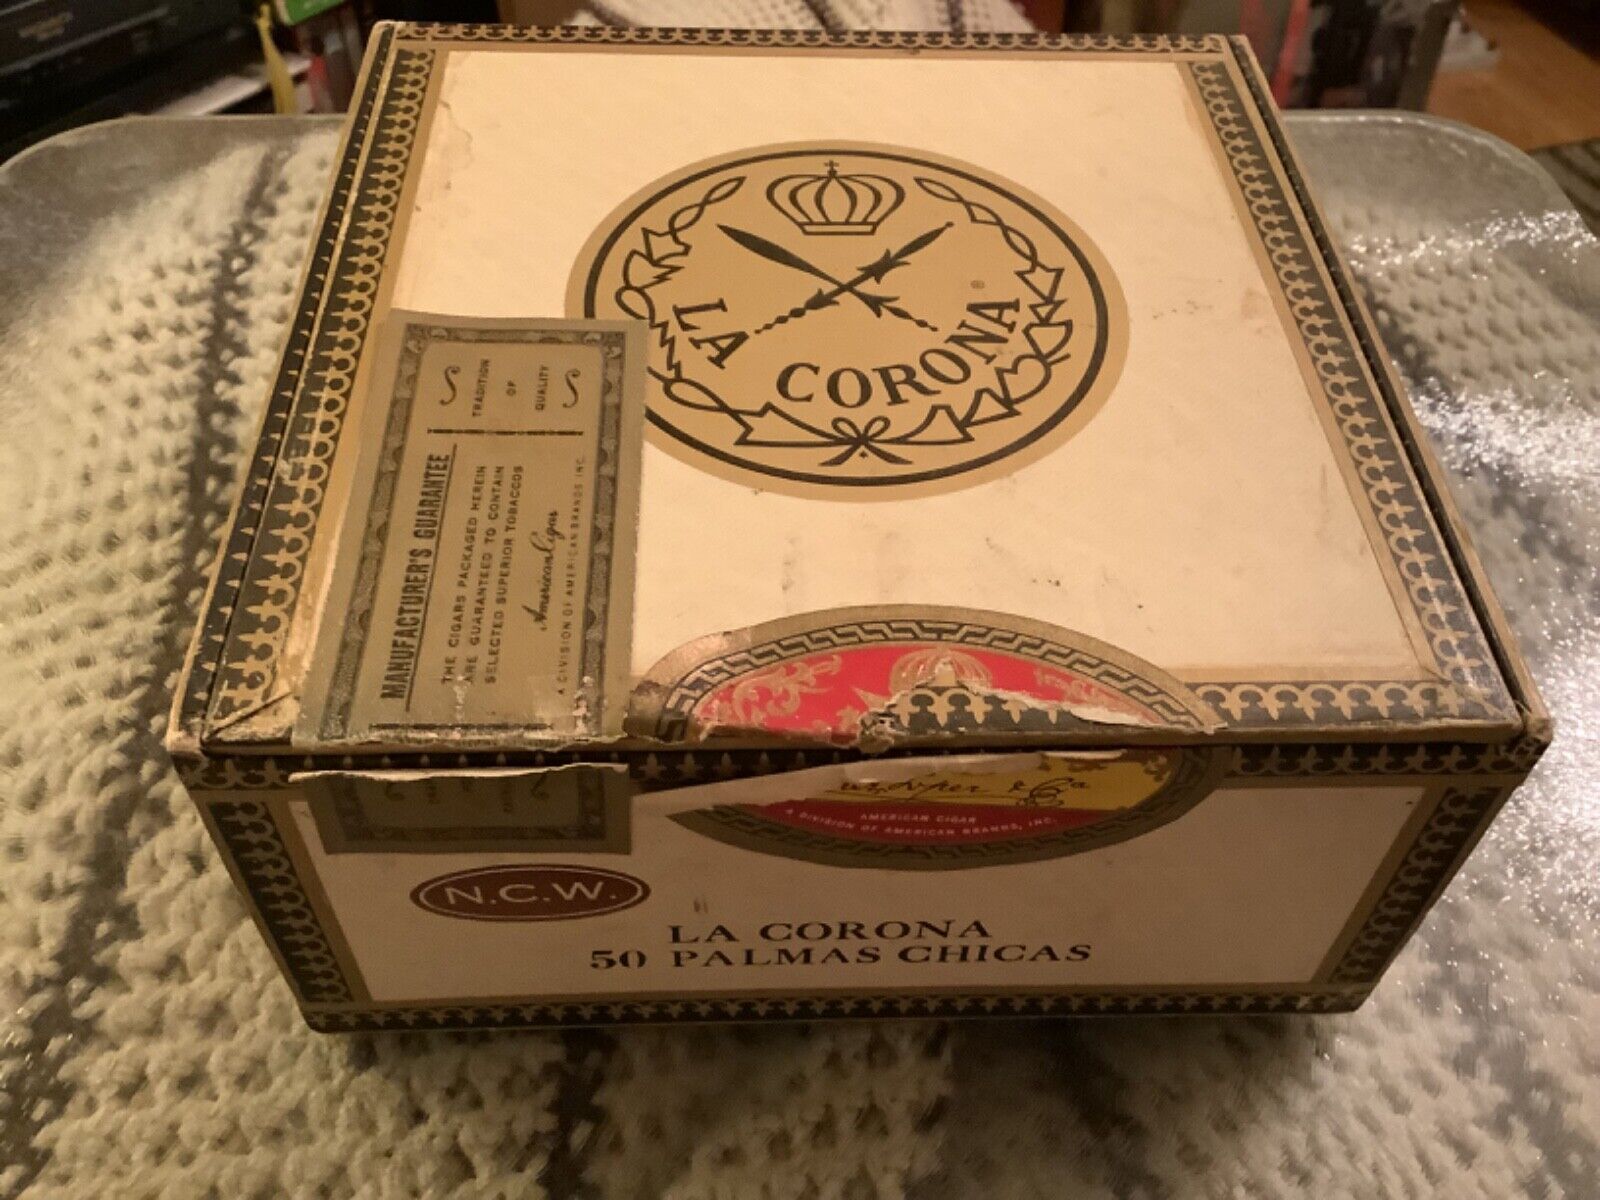 Vintage La Corona Palmas Chicas Cigar N.C.W. Box